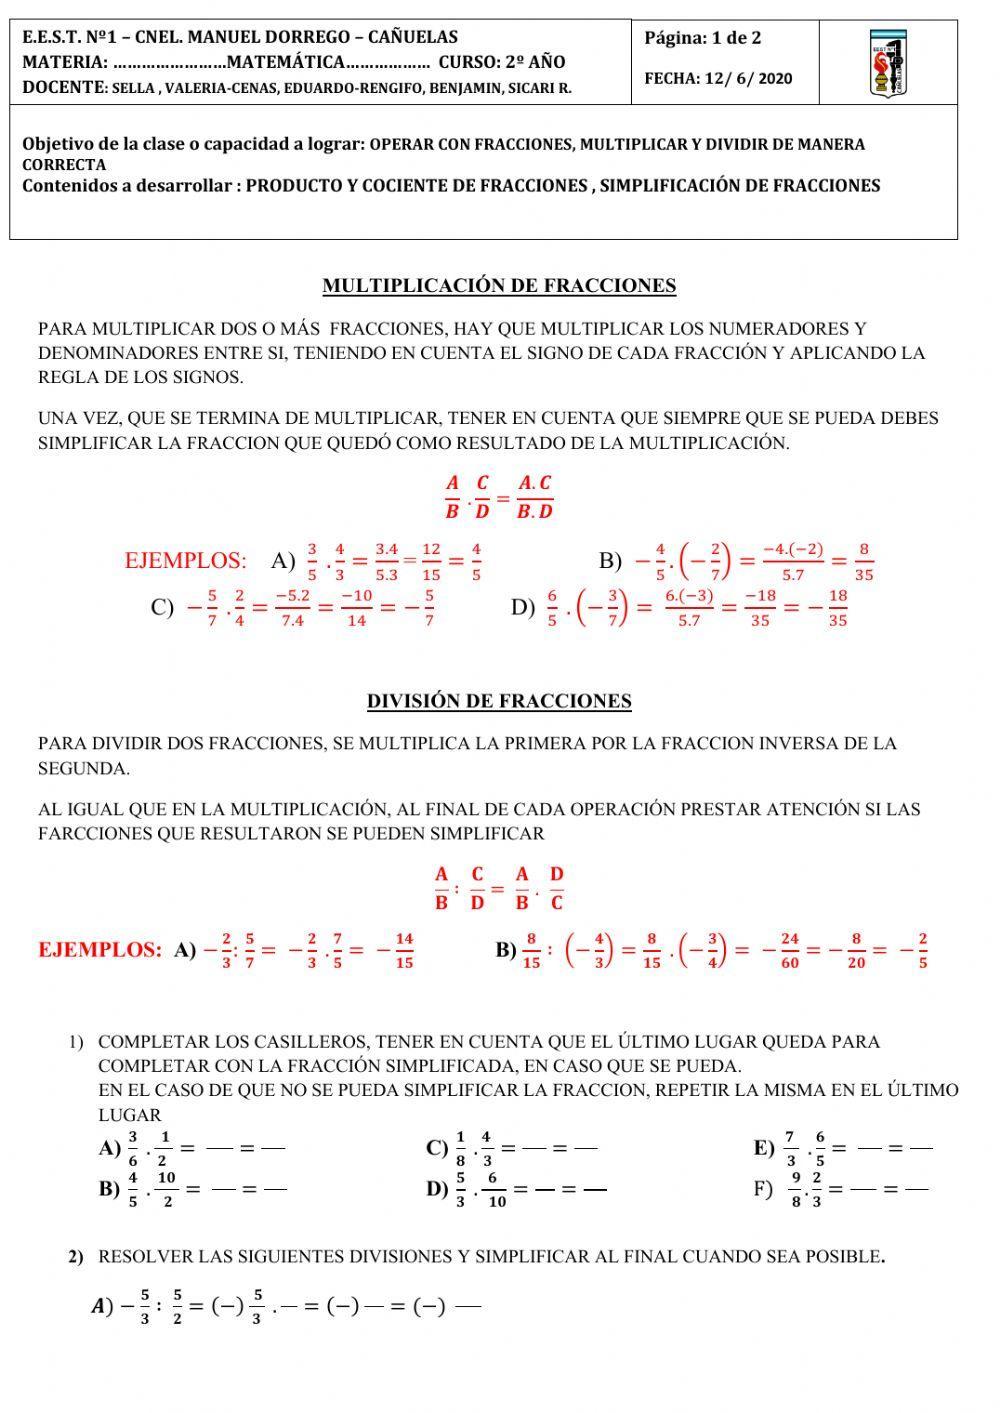 La multiplicacion y division de fracciones